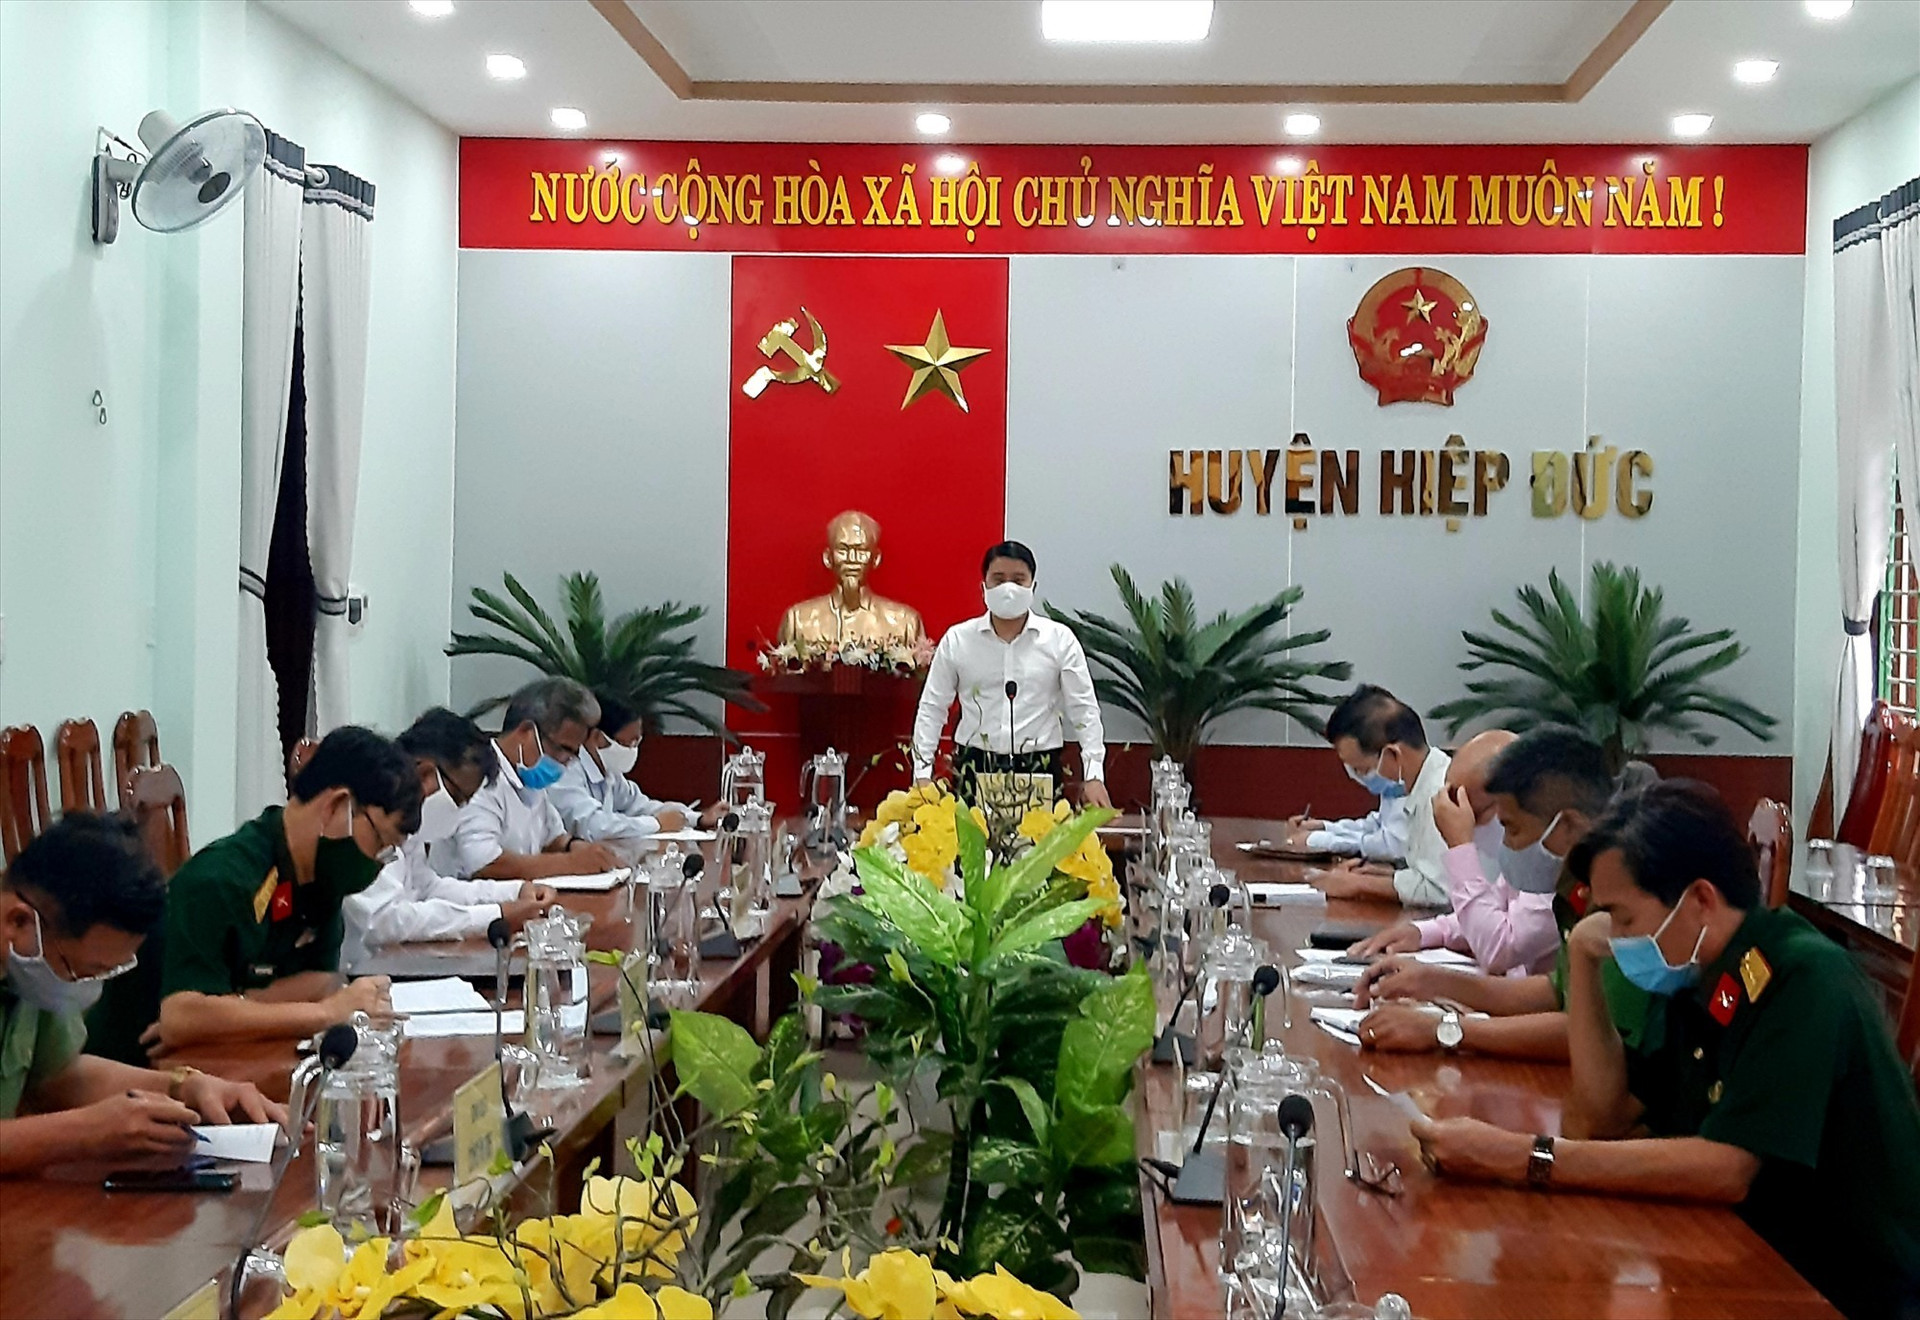 Phó Chủ tịch UBND tỉnh Trần Văn Tân phát biểu chỉ đạo tại cuộc làm việc với lãnh đạo huyện Hiệp Đức. Ảnh: N.P